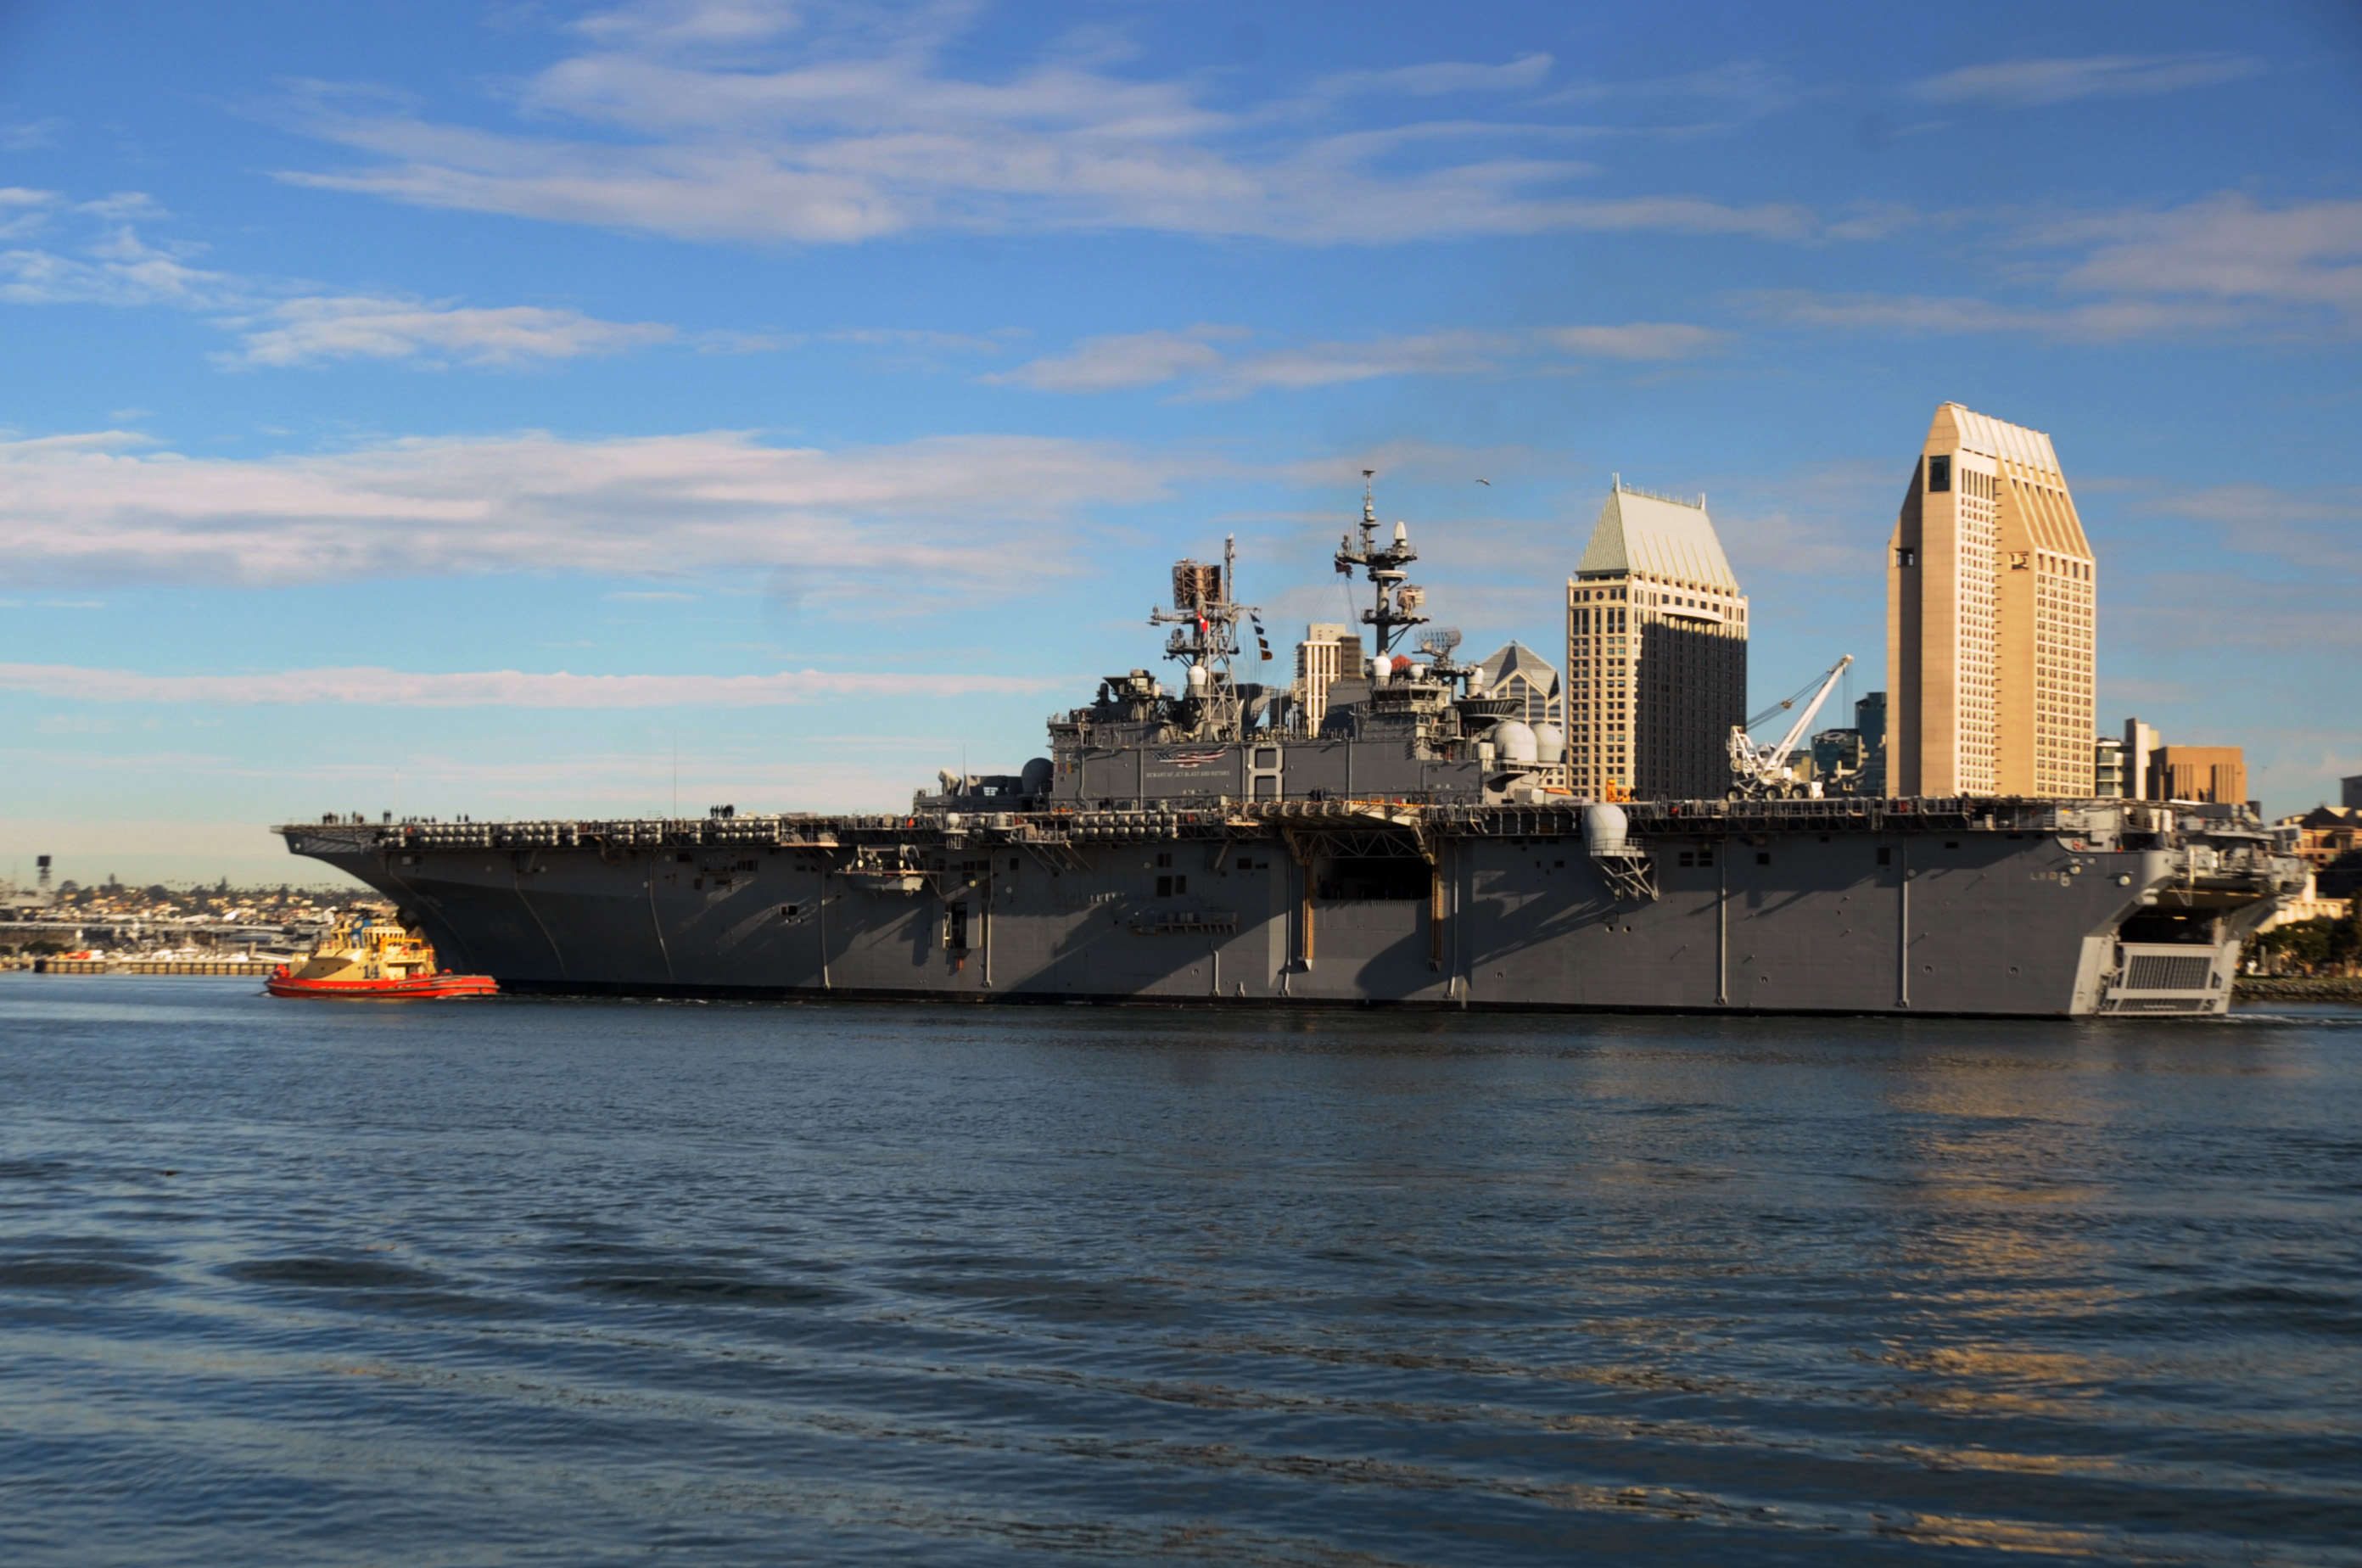 USS MAKIN ISLAND LHD-8 am 10.12.2013Bild: U.S. Navy